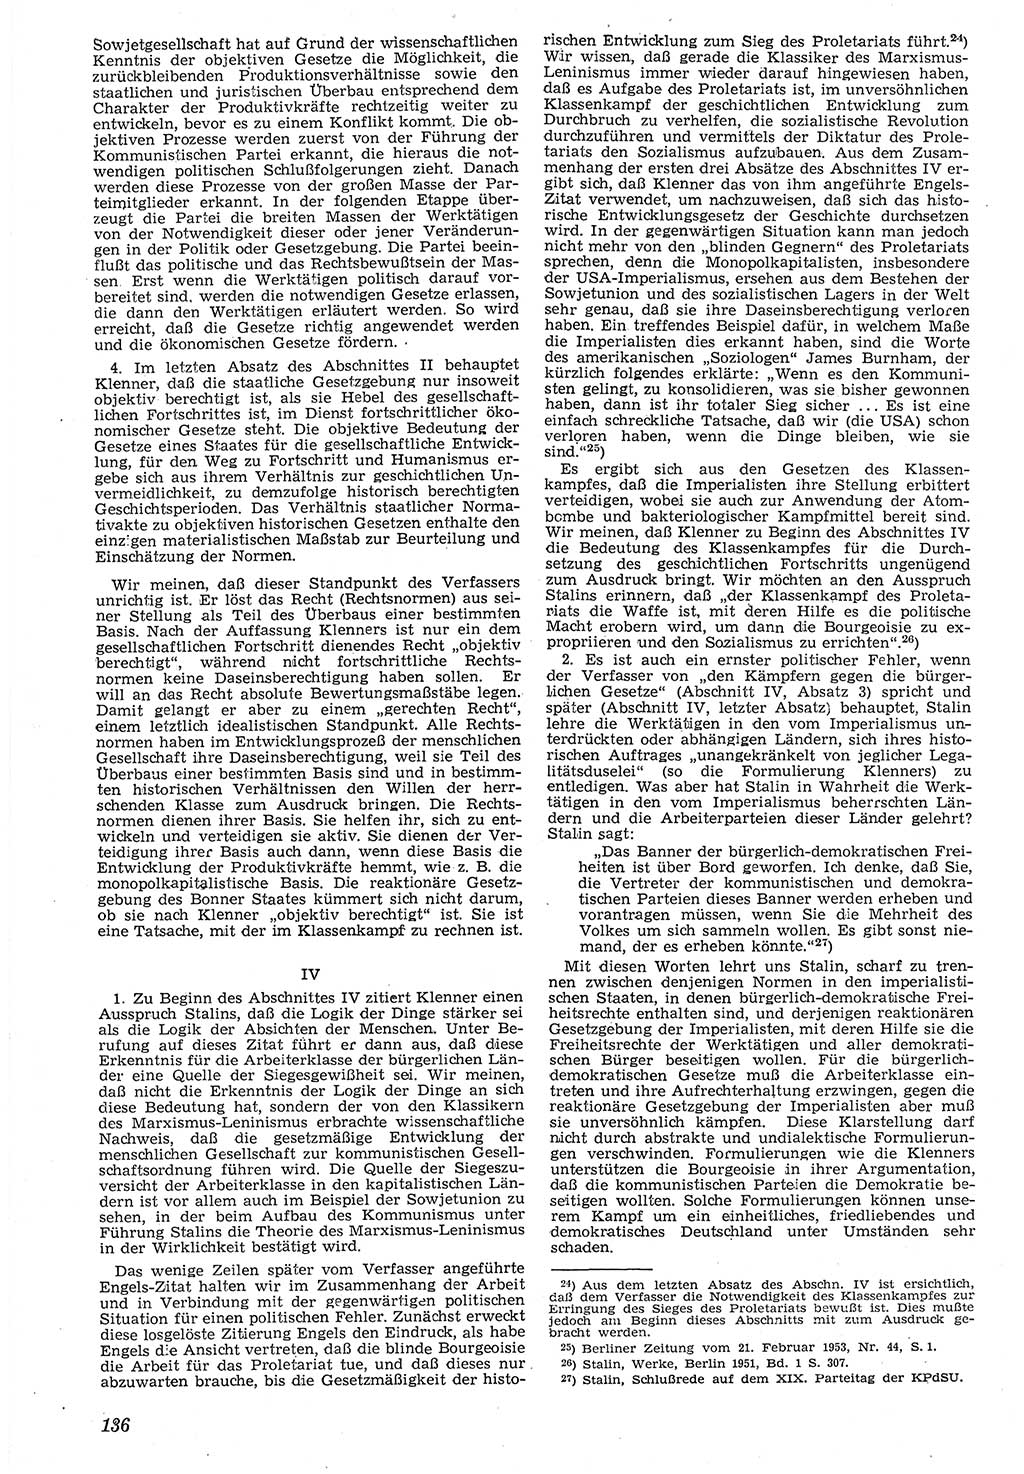 Neue Justiz (NJ), Zeitschrift für Recht und Rechtswissenschaft [Deutsche Demokratische Republik (DDR)], 7. Jahrgang 1953, Seite 136 (NJ DDR 1953, S. 136)